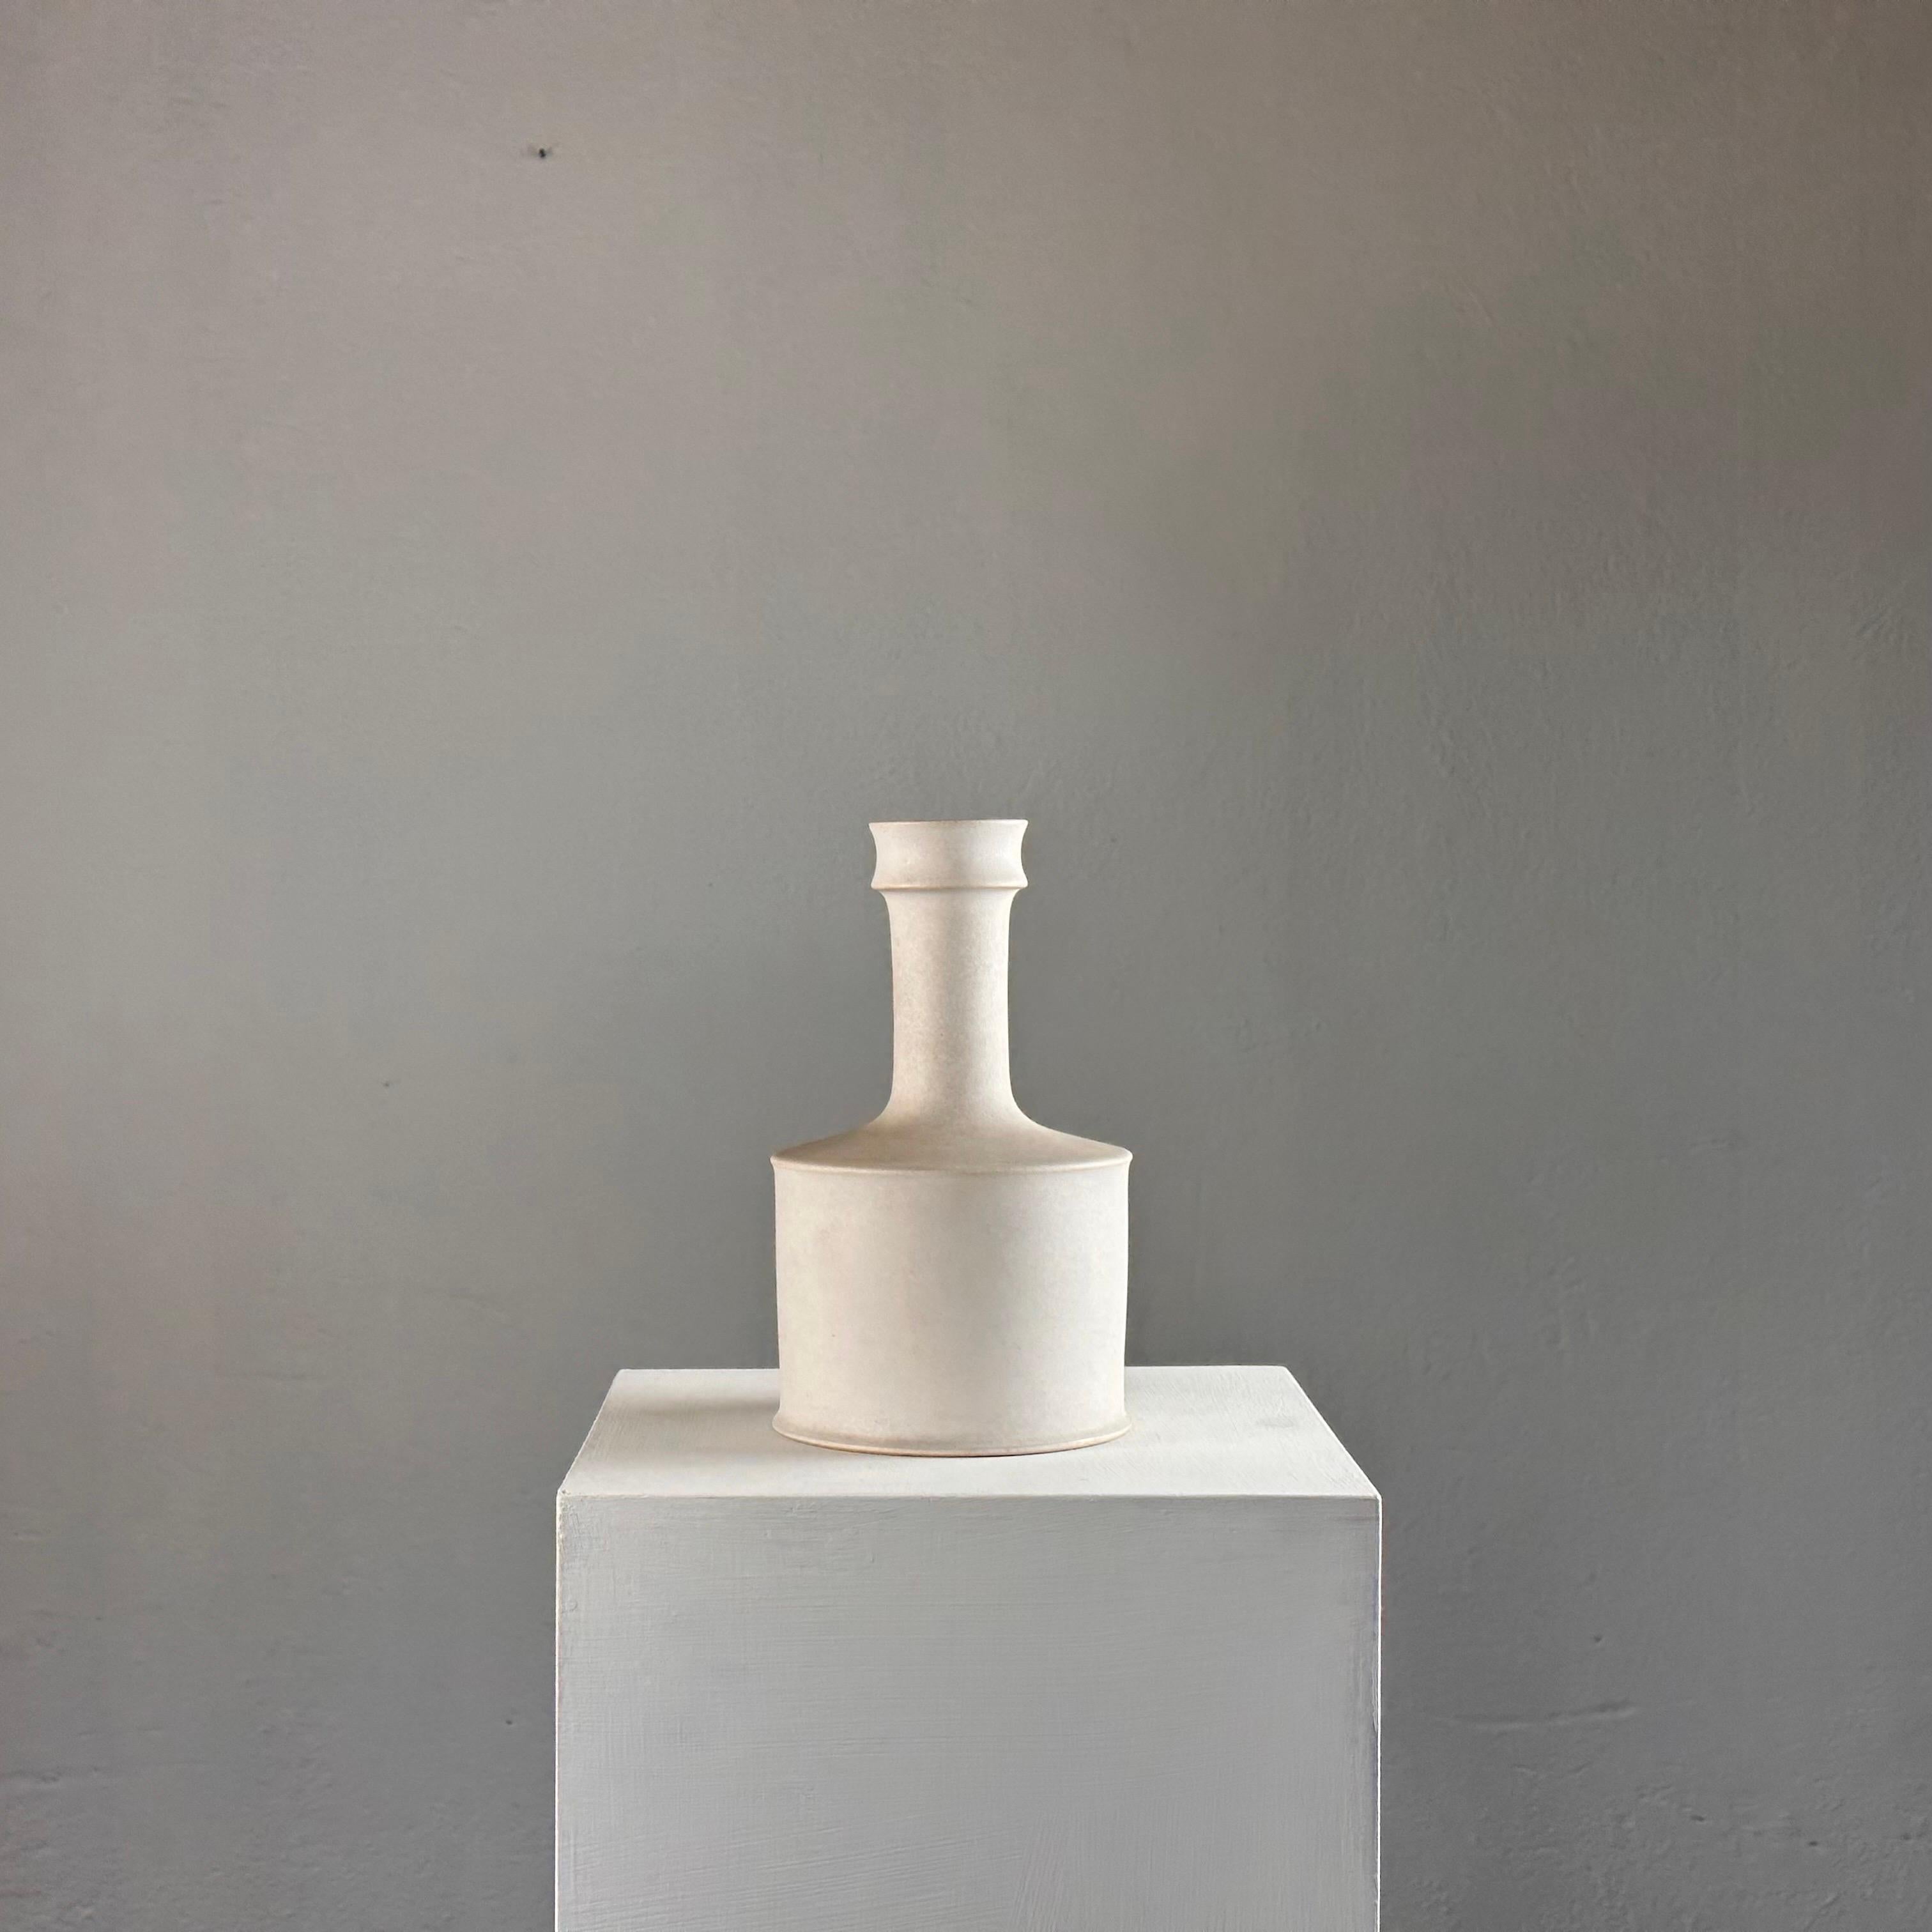 Fabriqué dans les années 1960, ce vase exquis incarne l'essence de la sophistication minimaliste, avec des lignes épurées et une silhouette élégante.

Le vase présente une base blanche immaculée ornée de profils subtilement nuancés de couleur terre,